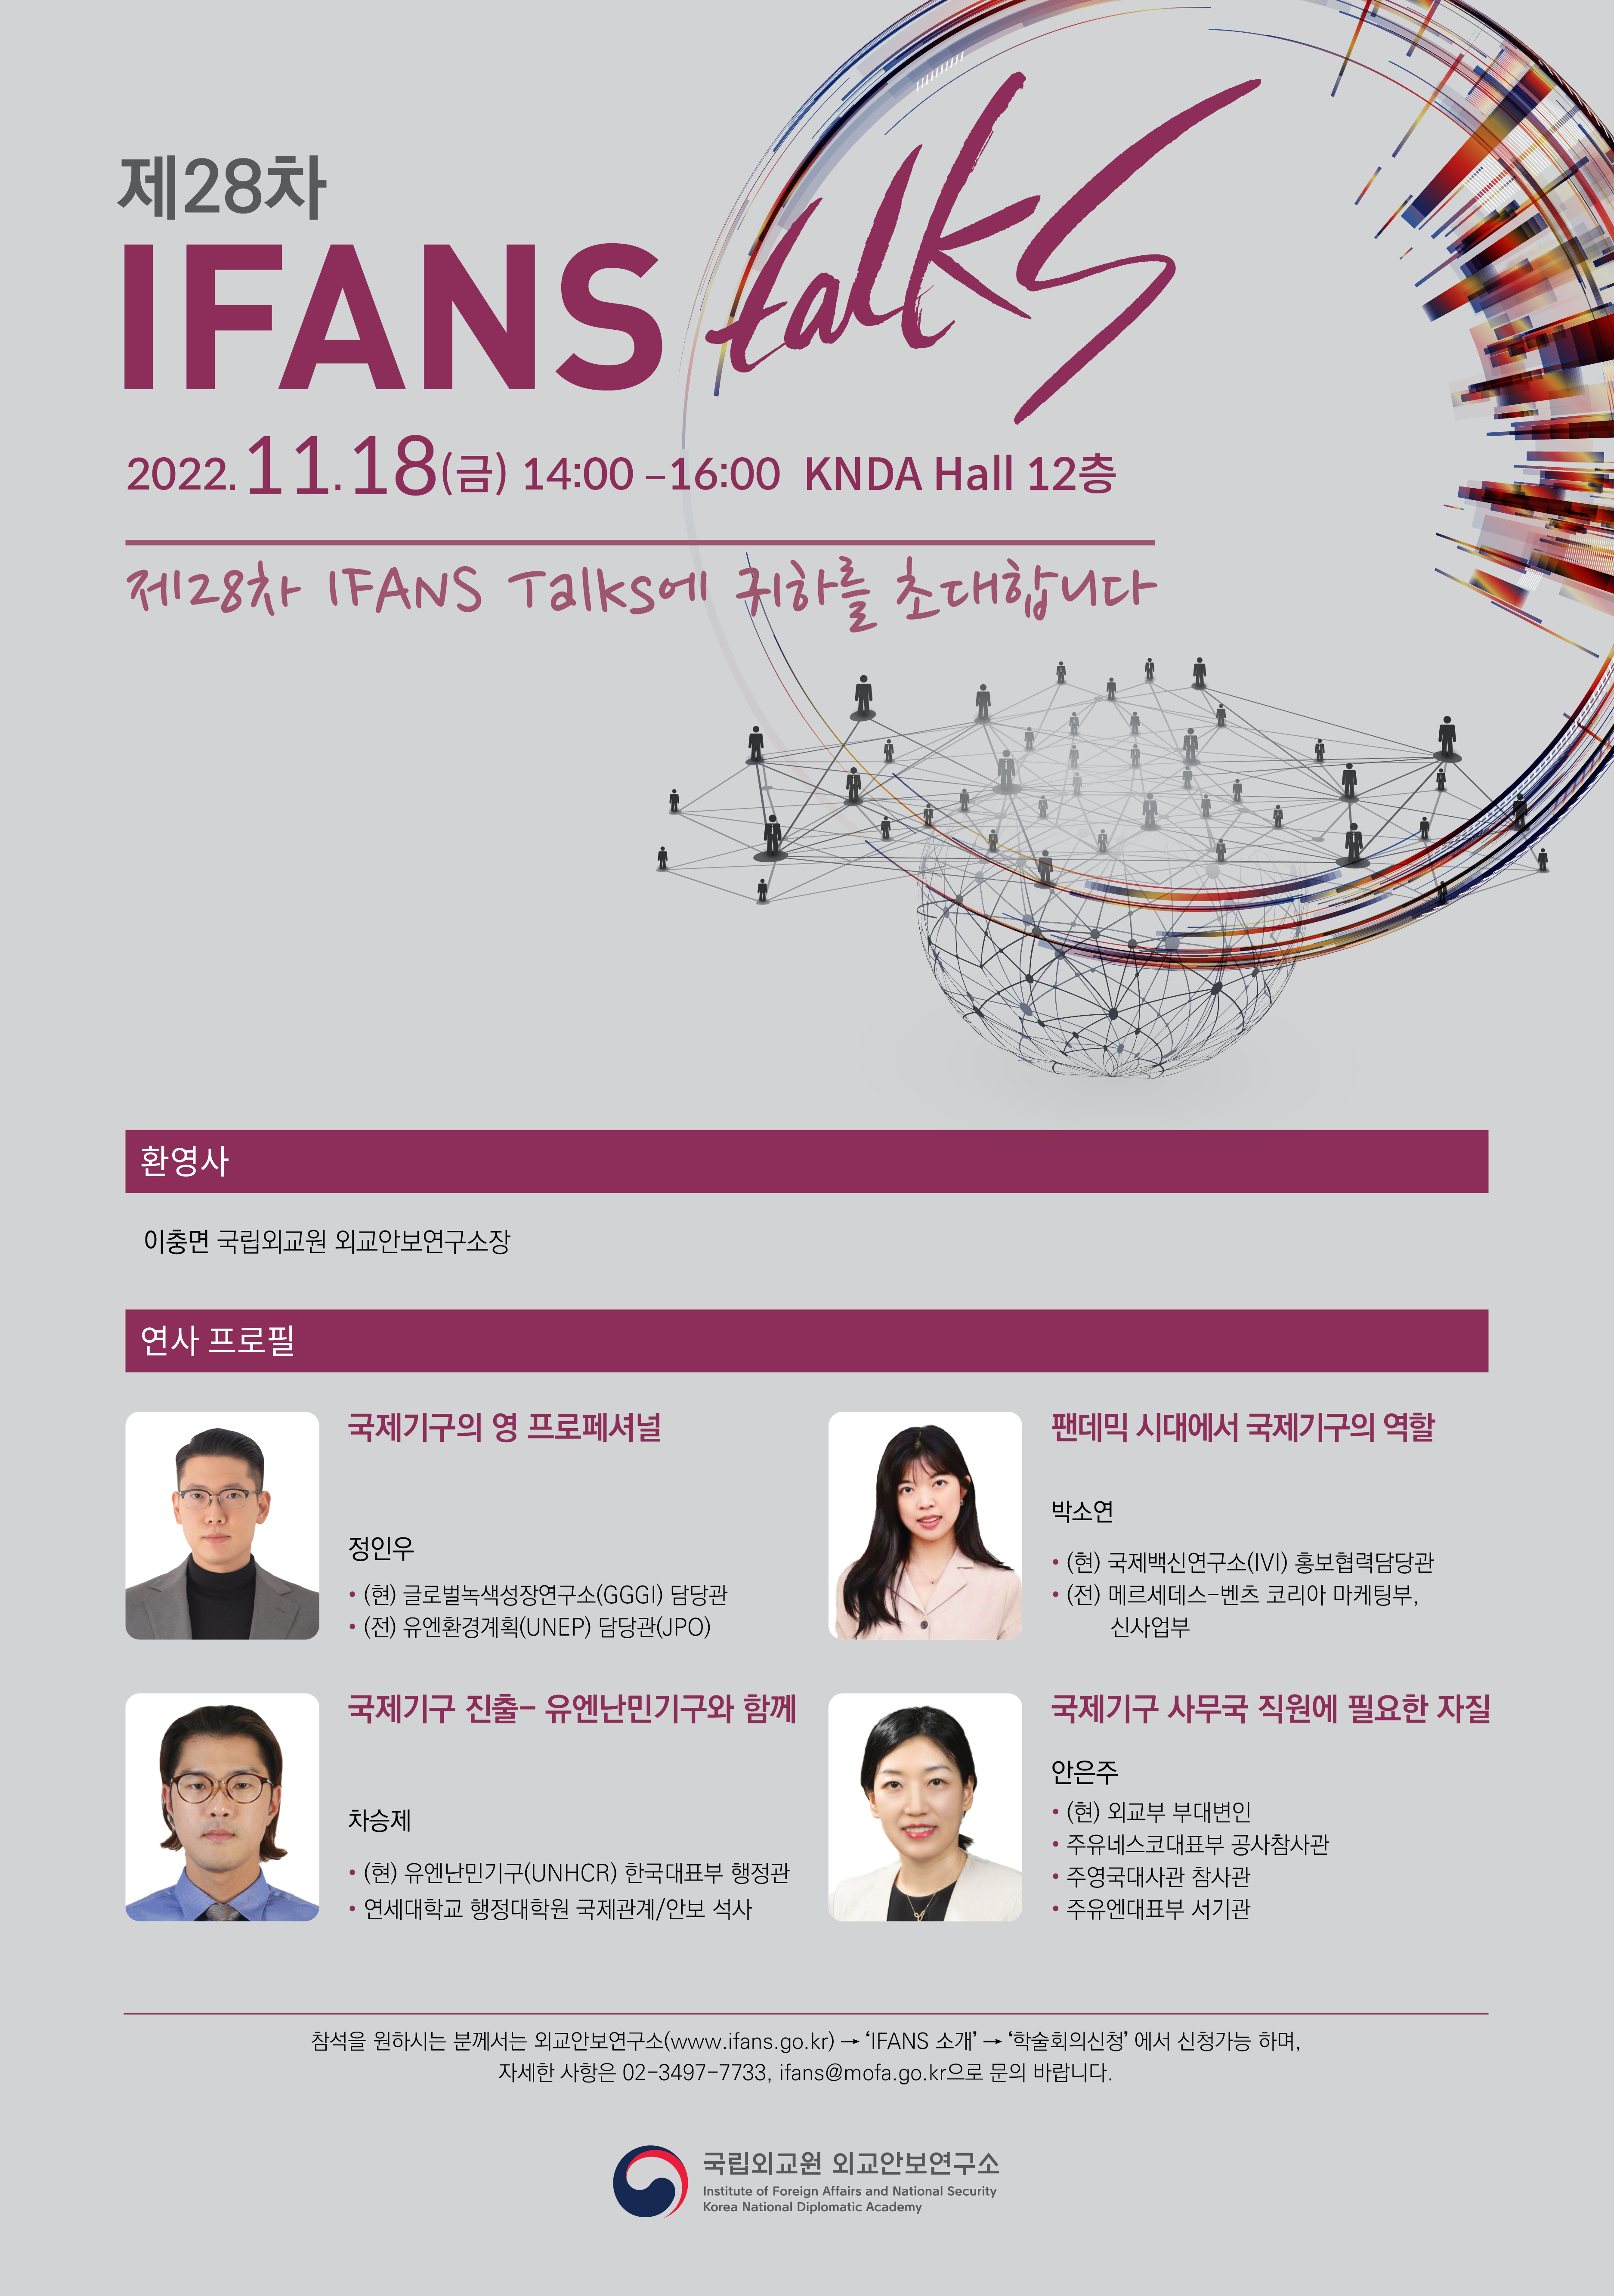 제 28차 IFANS Talks 개최(11.18)